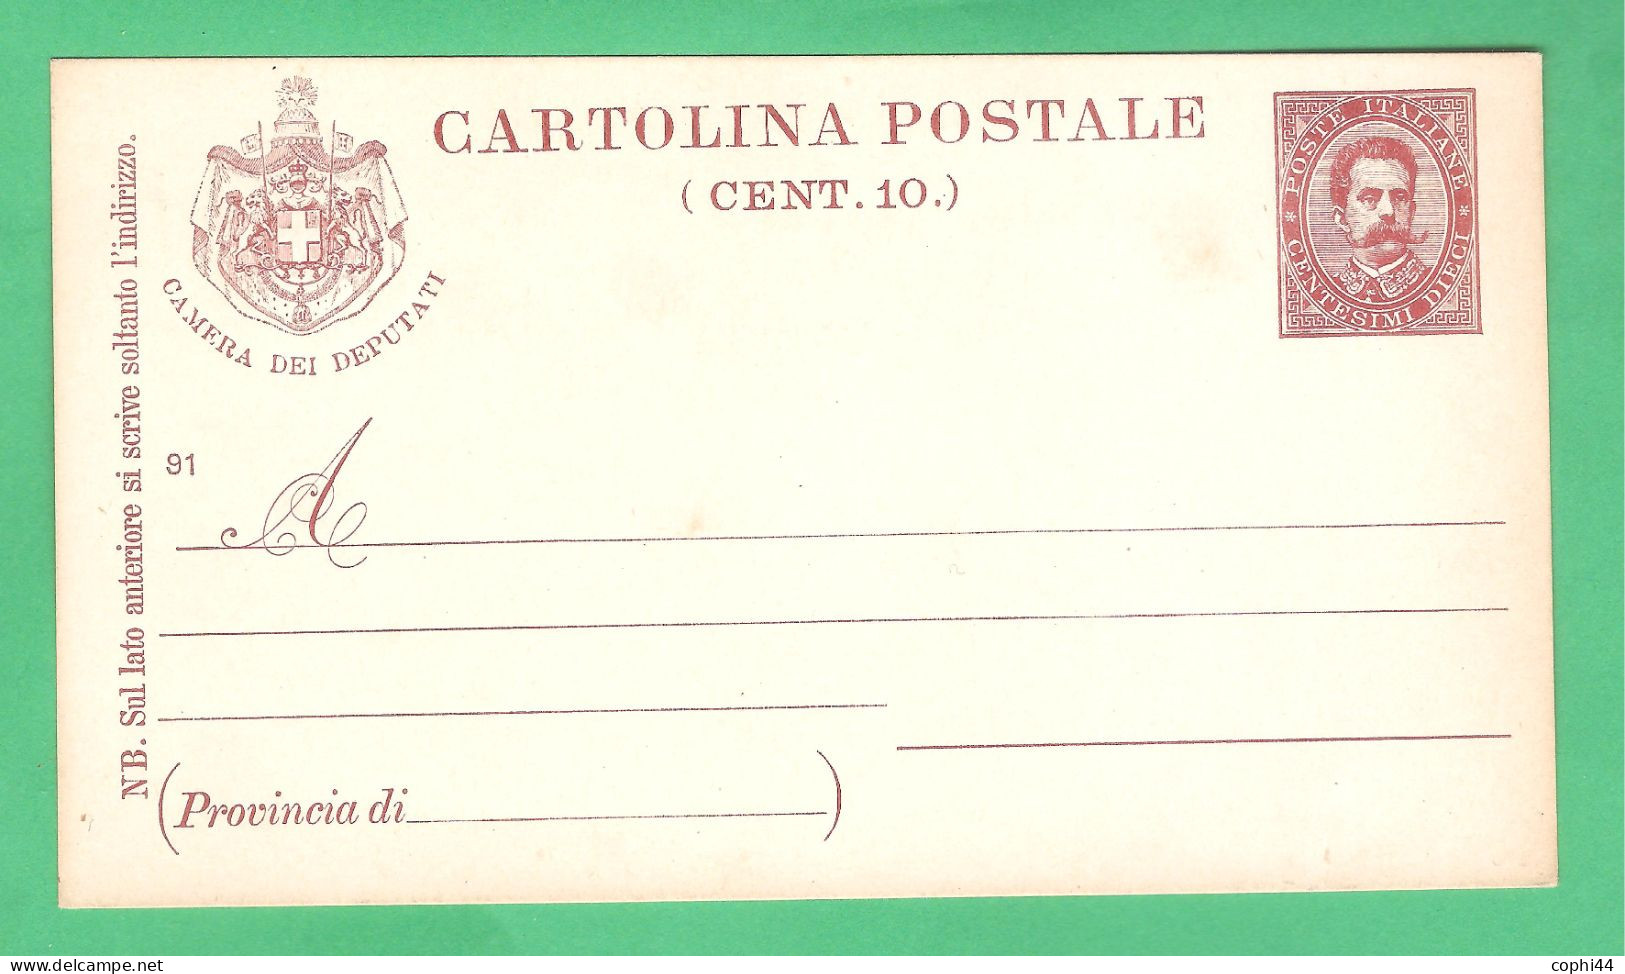 REGNO D'ITALIA 1891 CARTOLINA POSTALE PER DEPUTATI UMBERTO I MIL. 91 STEMMA CON BANDIERE (FILAGRANO S4) NUOVA - Entiers Postaux